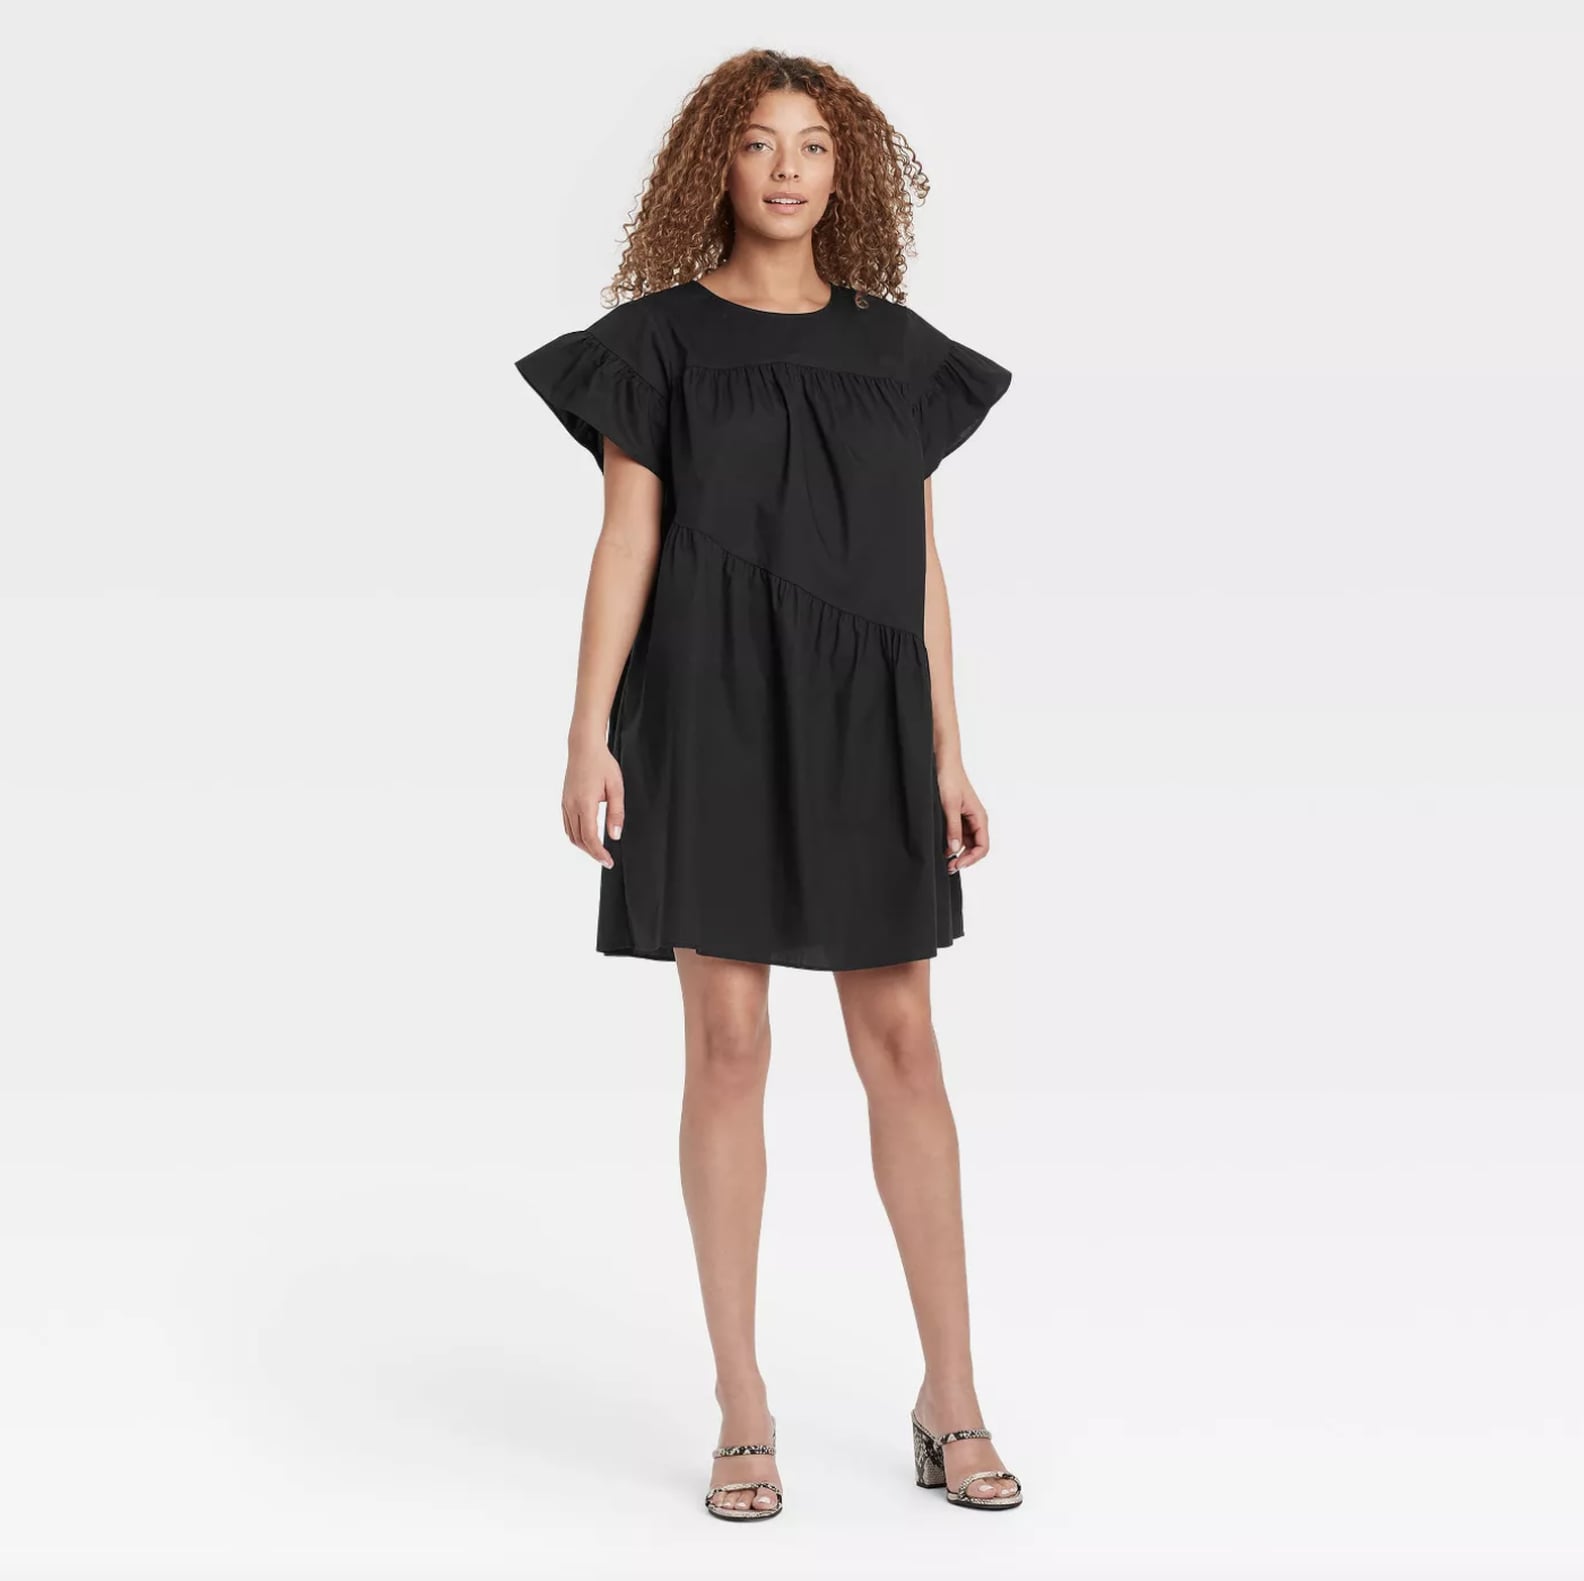 Best Black Dresses For Summer | POPSUGAR Fashion